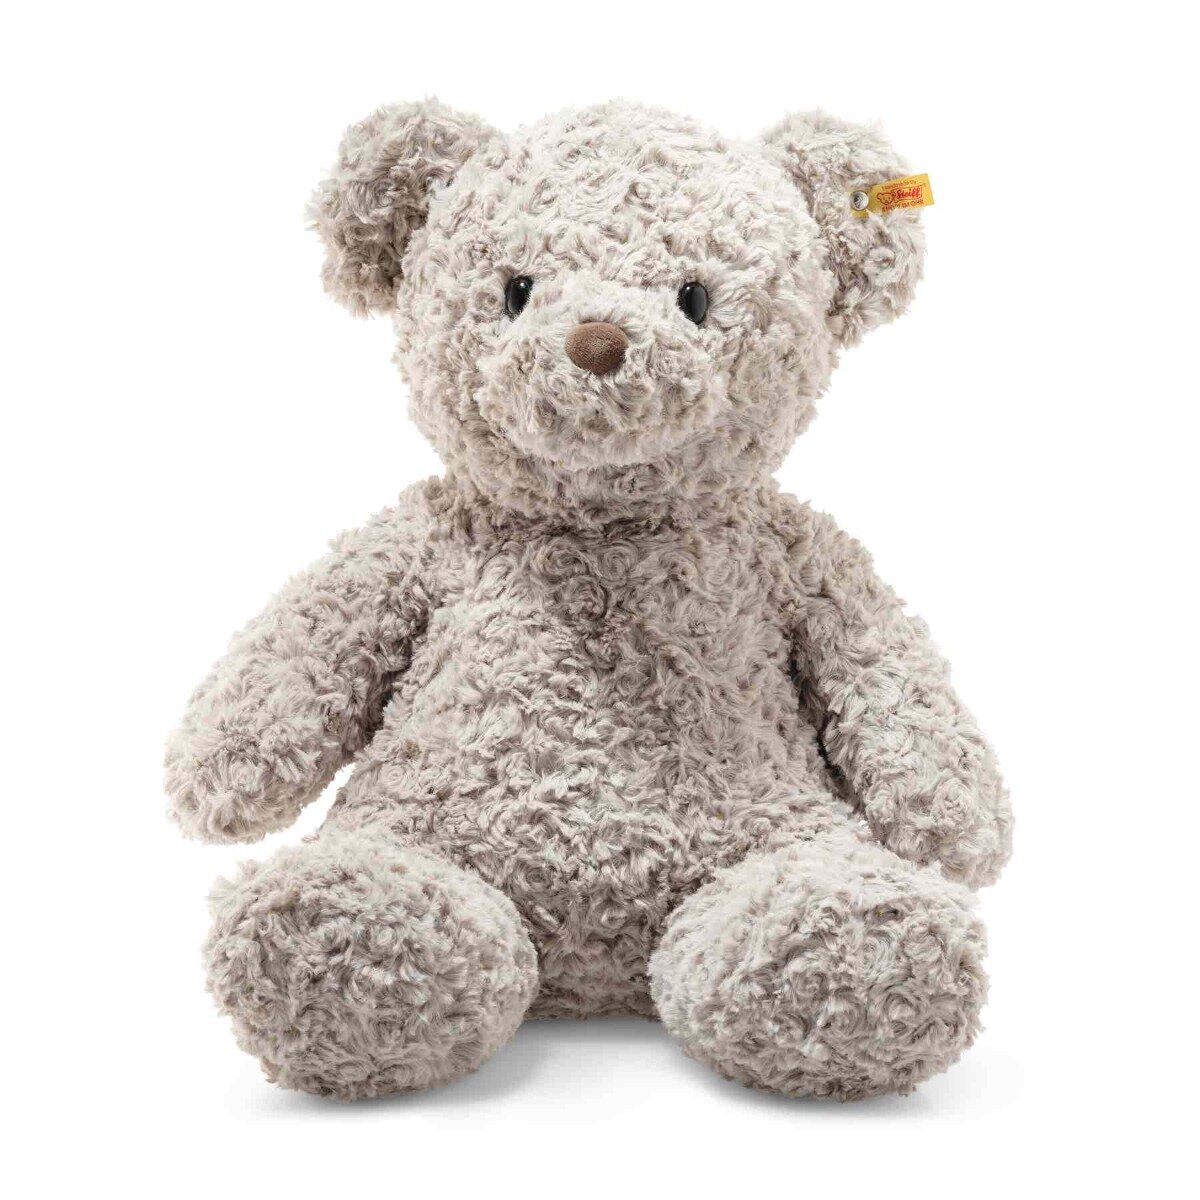 Мягкая игрушка Steiff Soft Cuddly Friends Honey Teddy bear (Штайф мягкие приятные друзья Медовый Мишка Тедди 48 см)